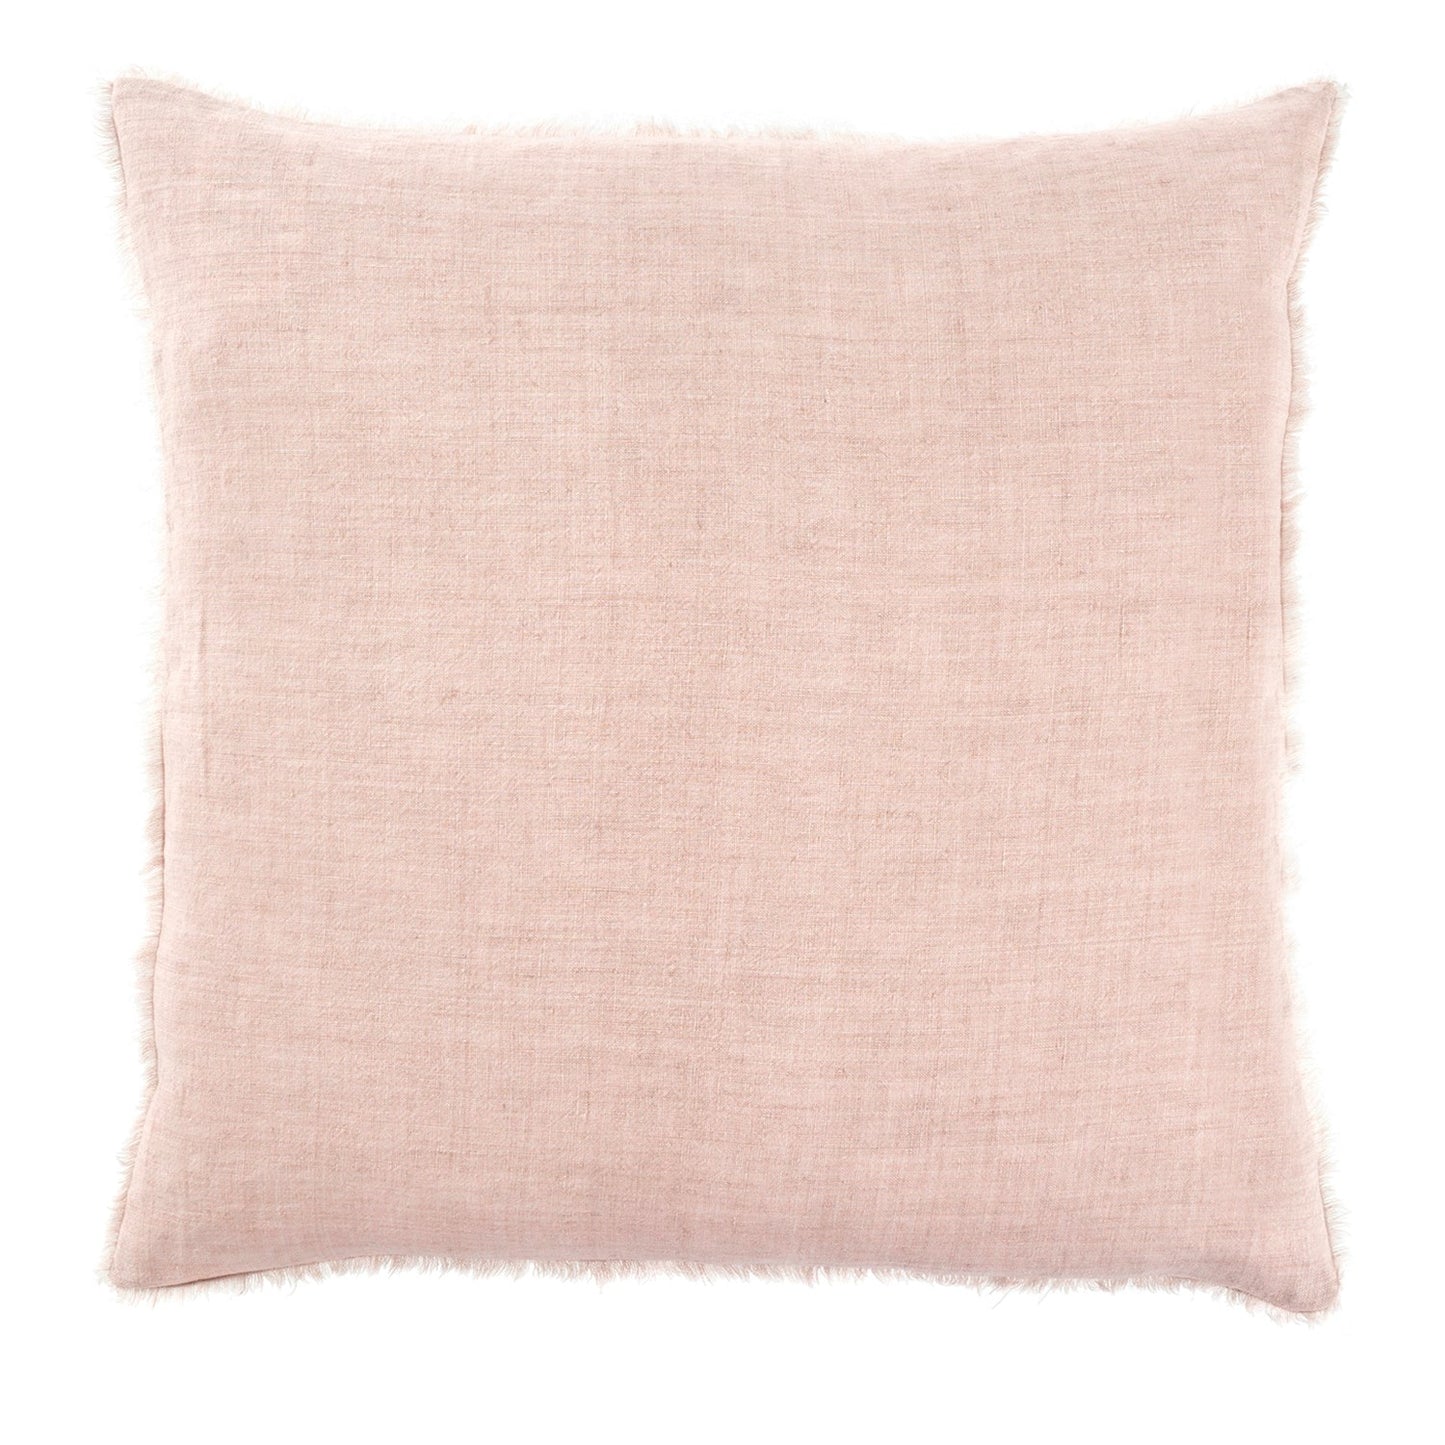 Linen Dusty Rose pillow